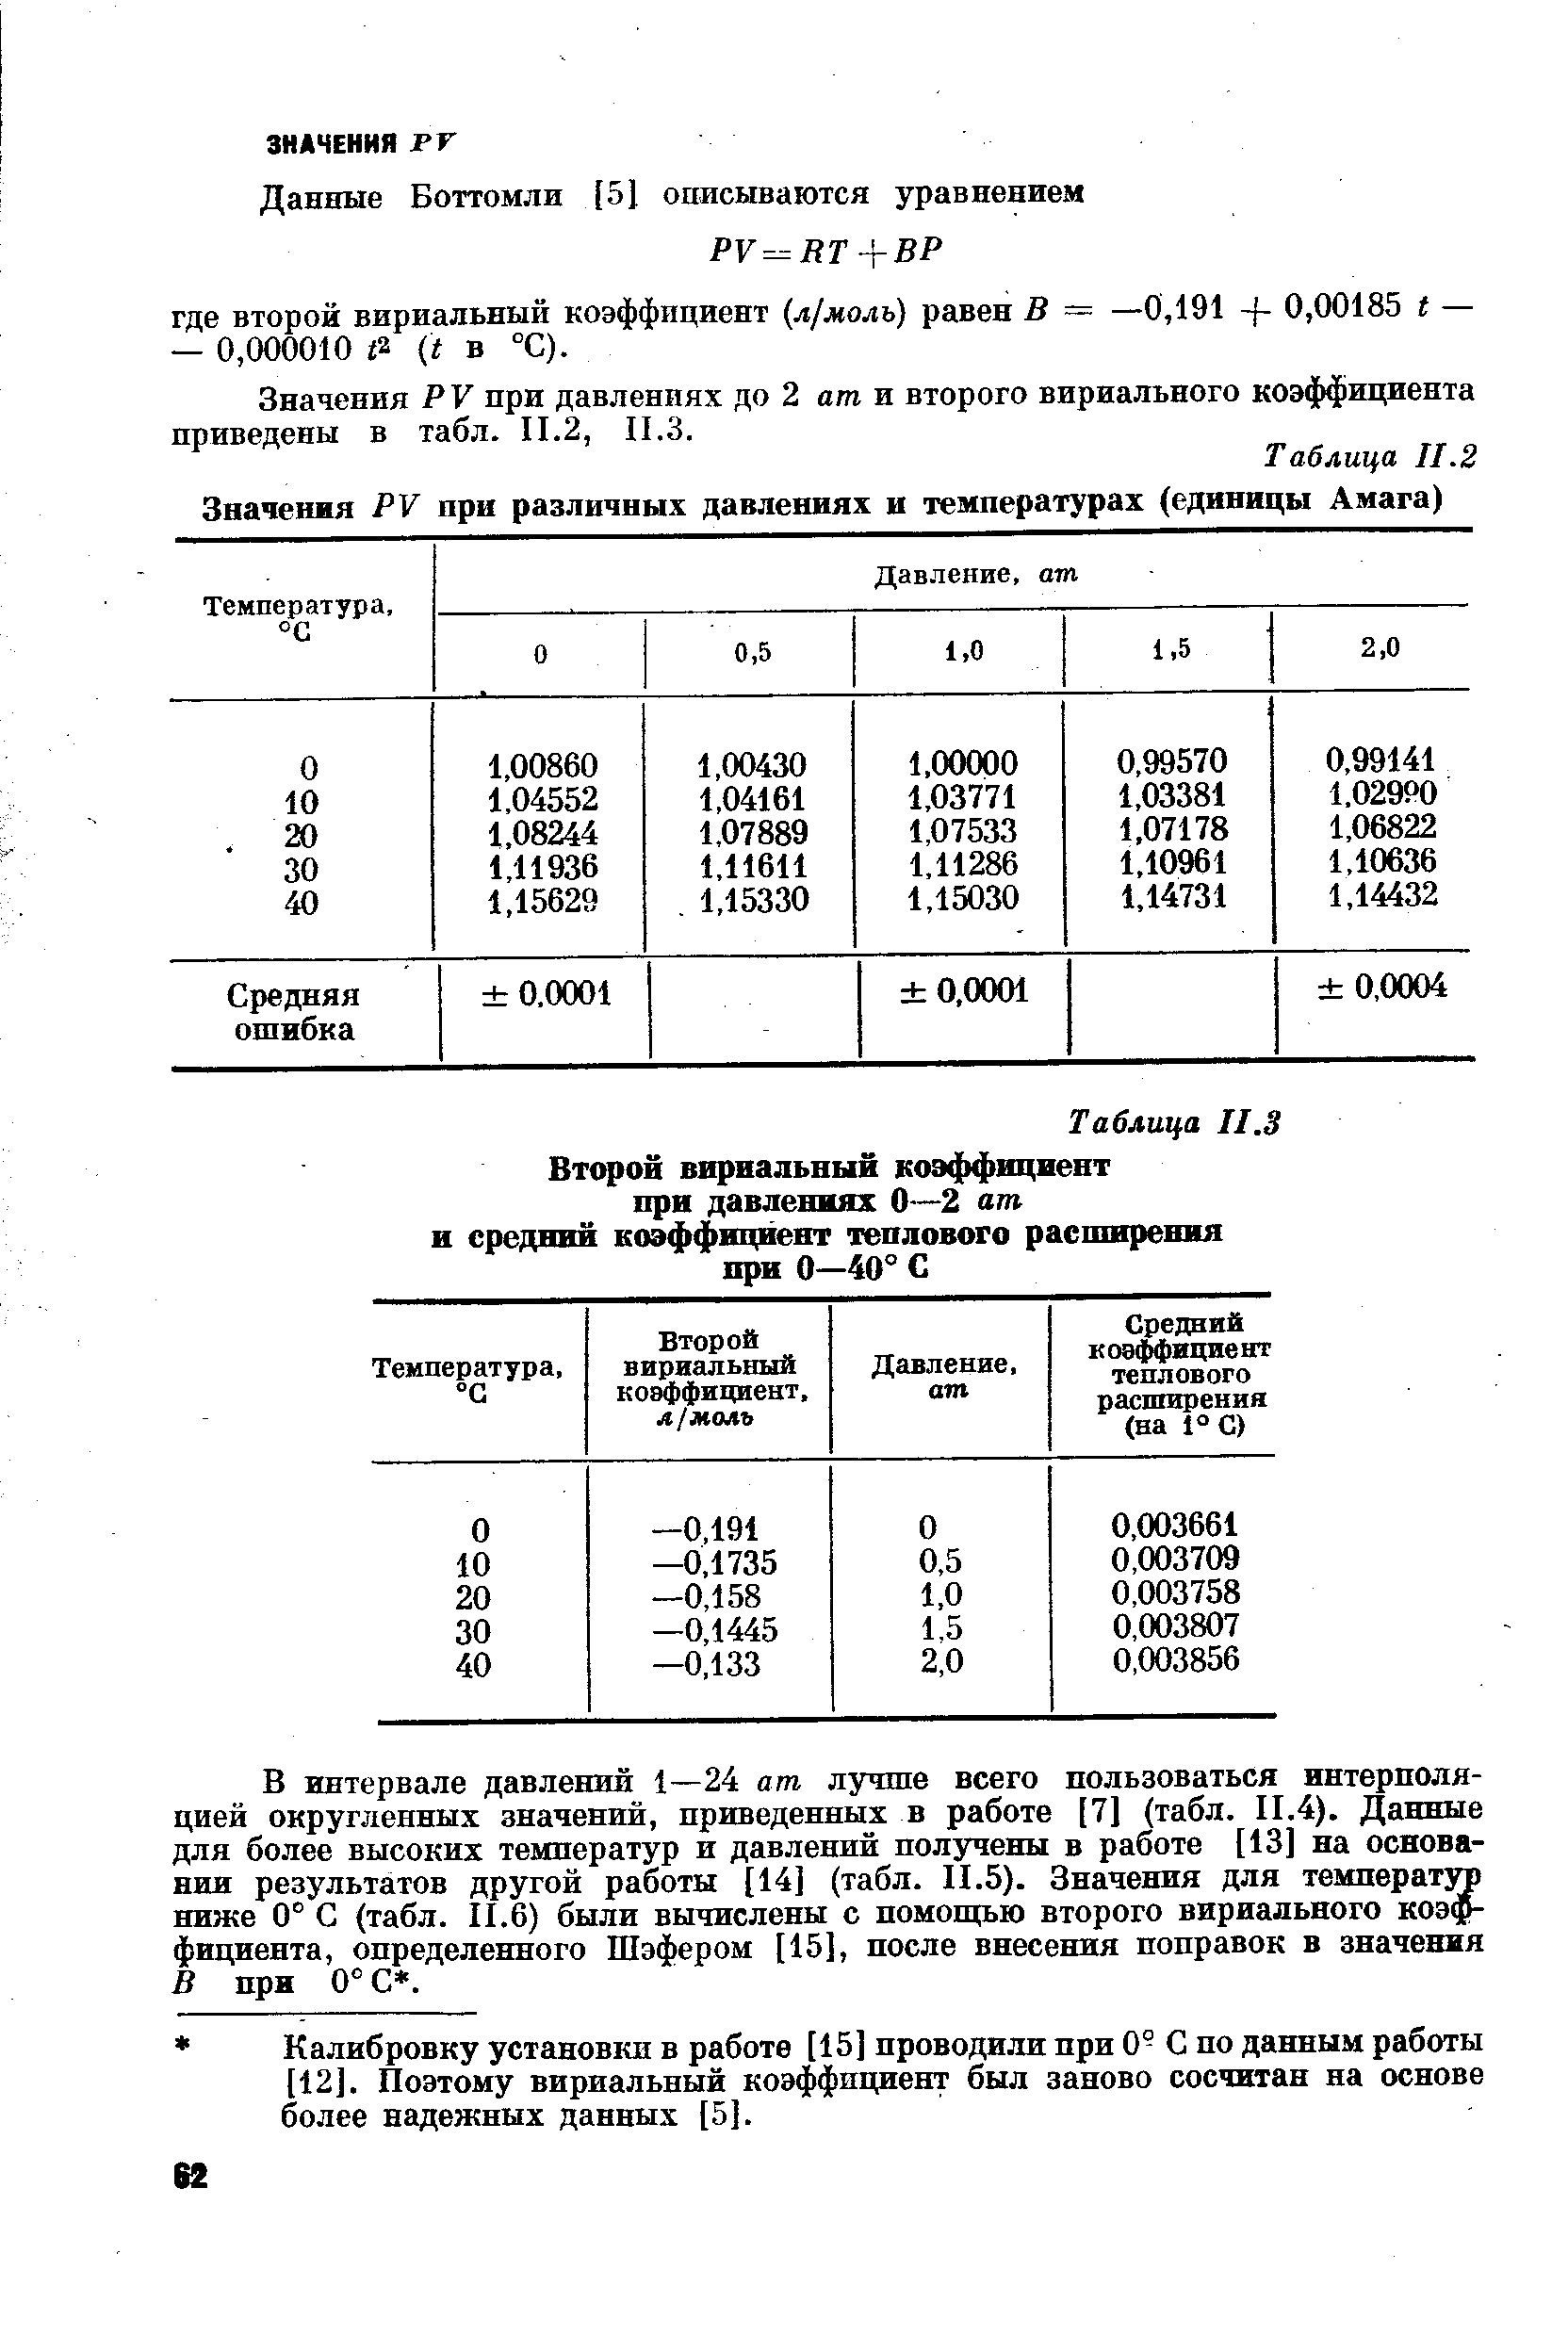 Значения РУ при давлениях до 2 ат и второго вириального коэффициента приведены в табл. II.2, П.З.